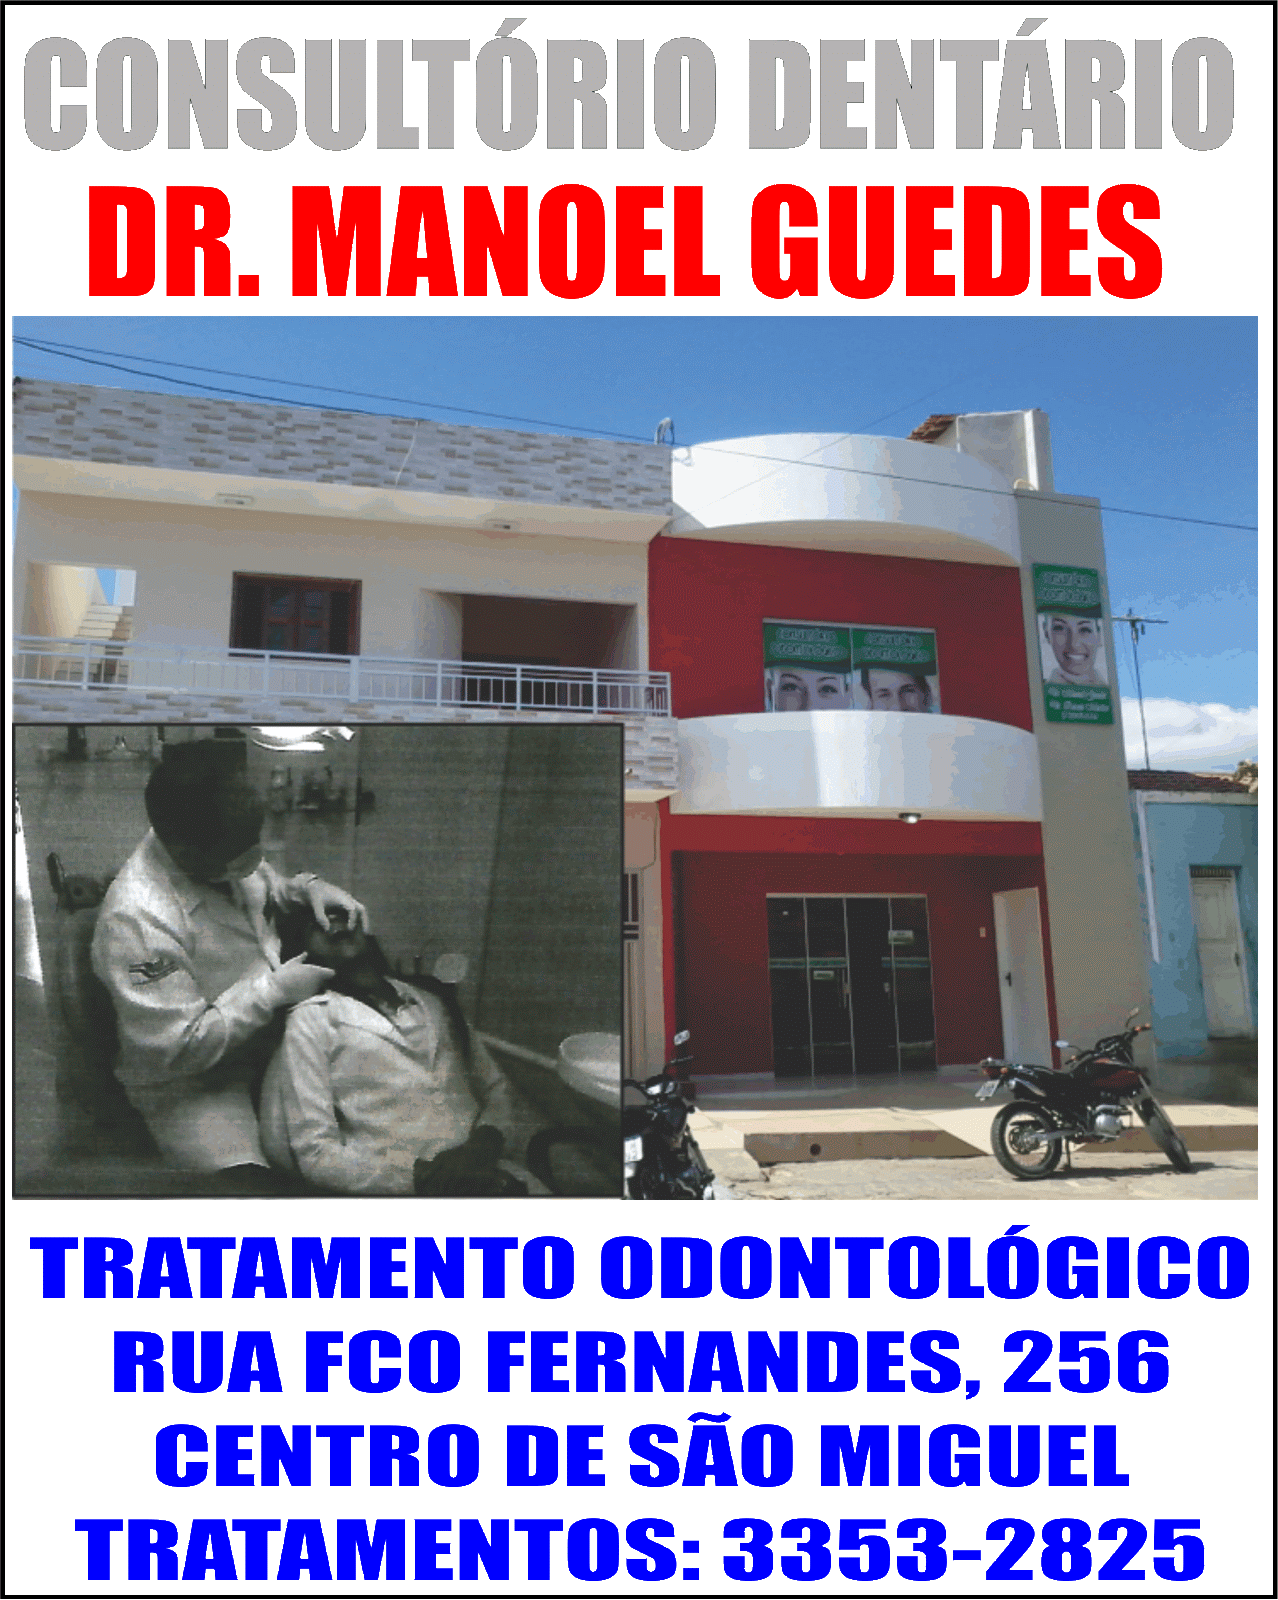 DR MANOEL GUEDES